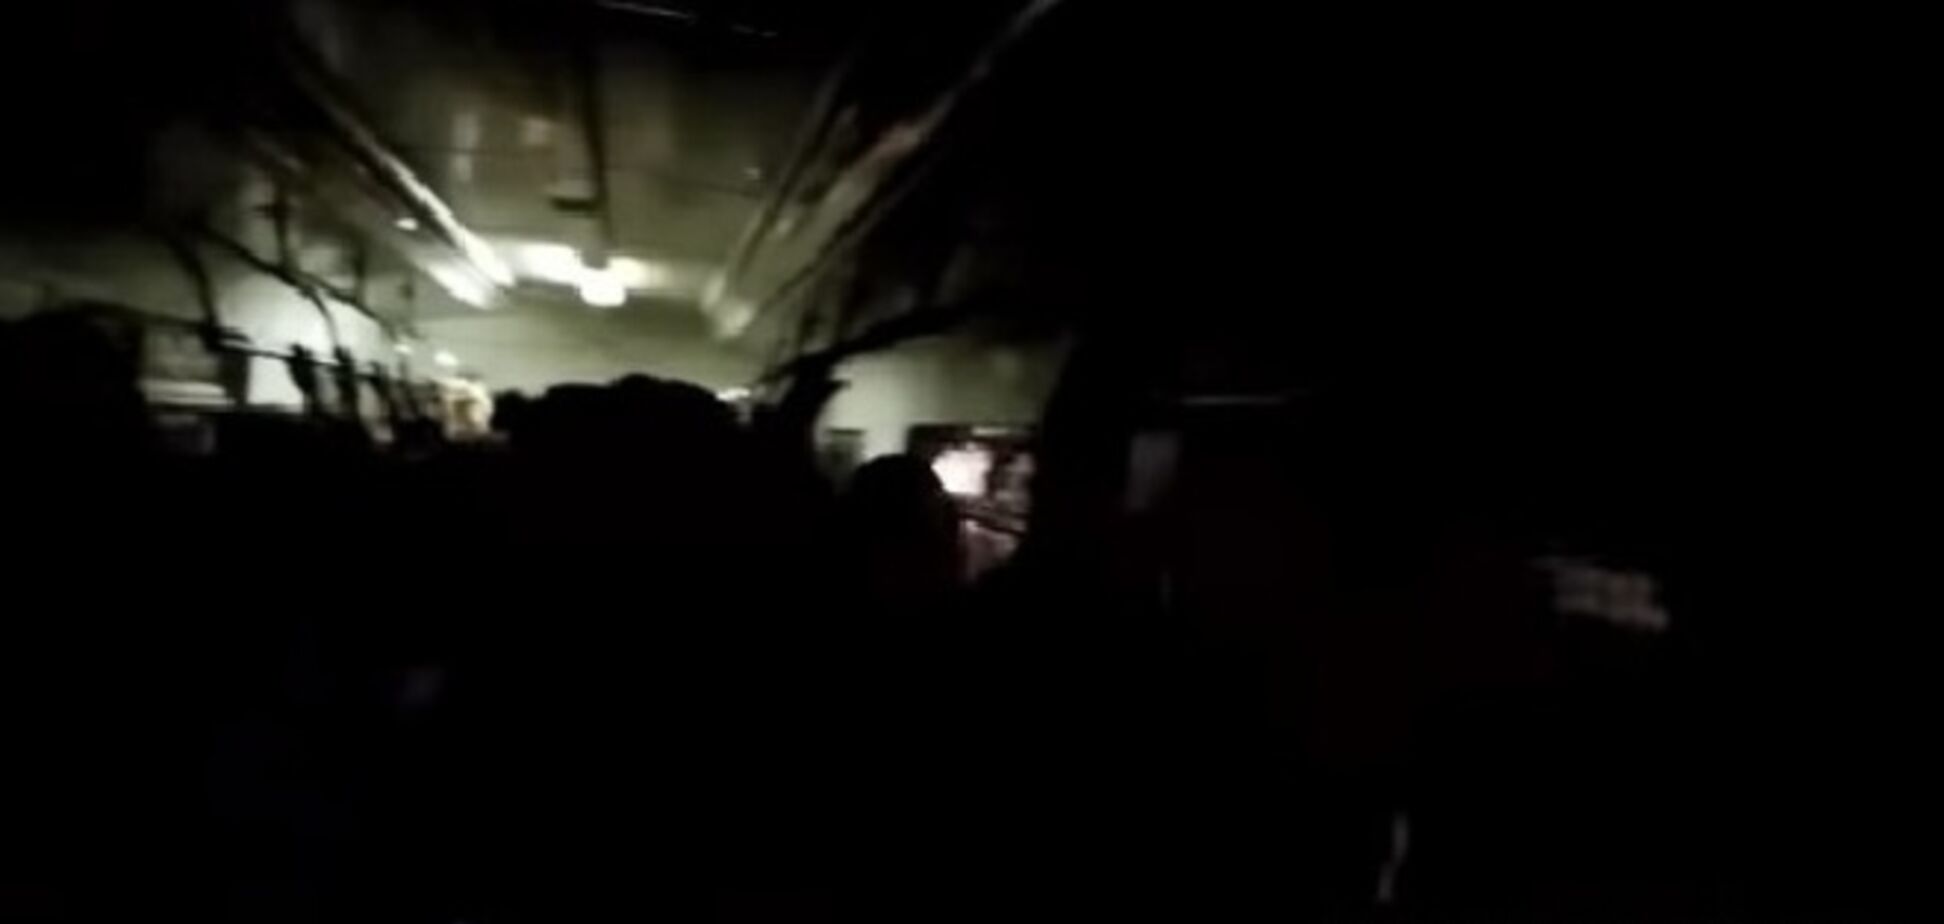 Видеофакт: переполненные вагоны киевского метро возят пассажиров без света 